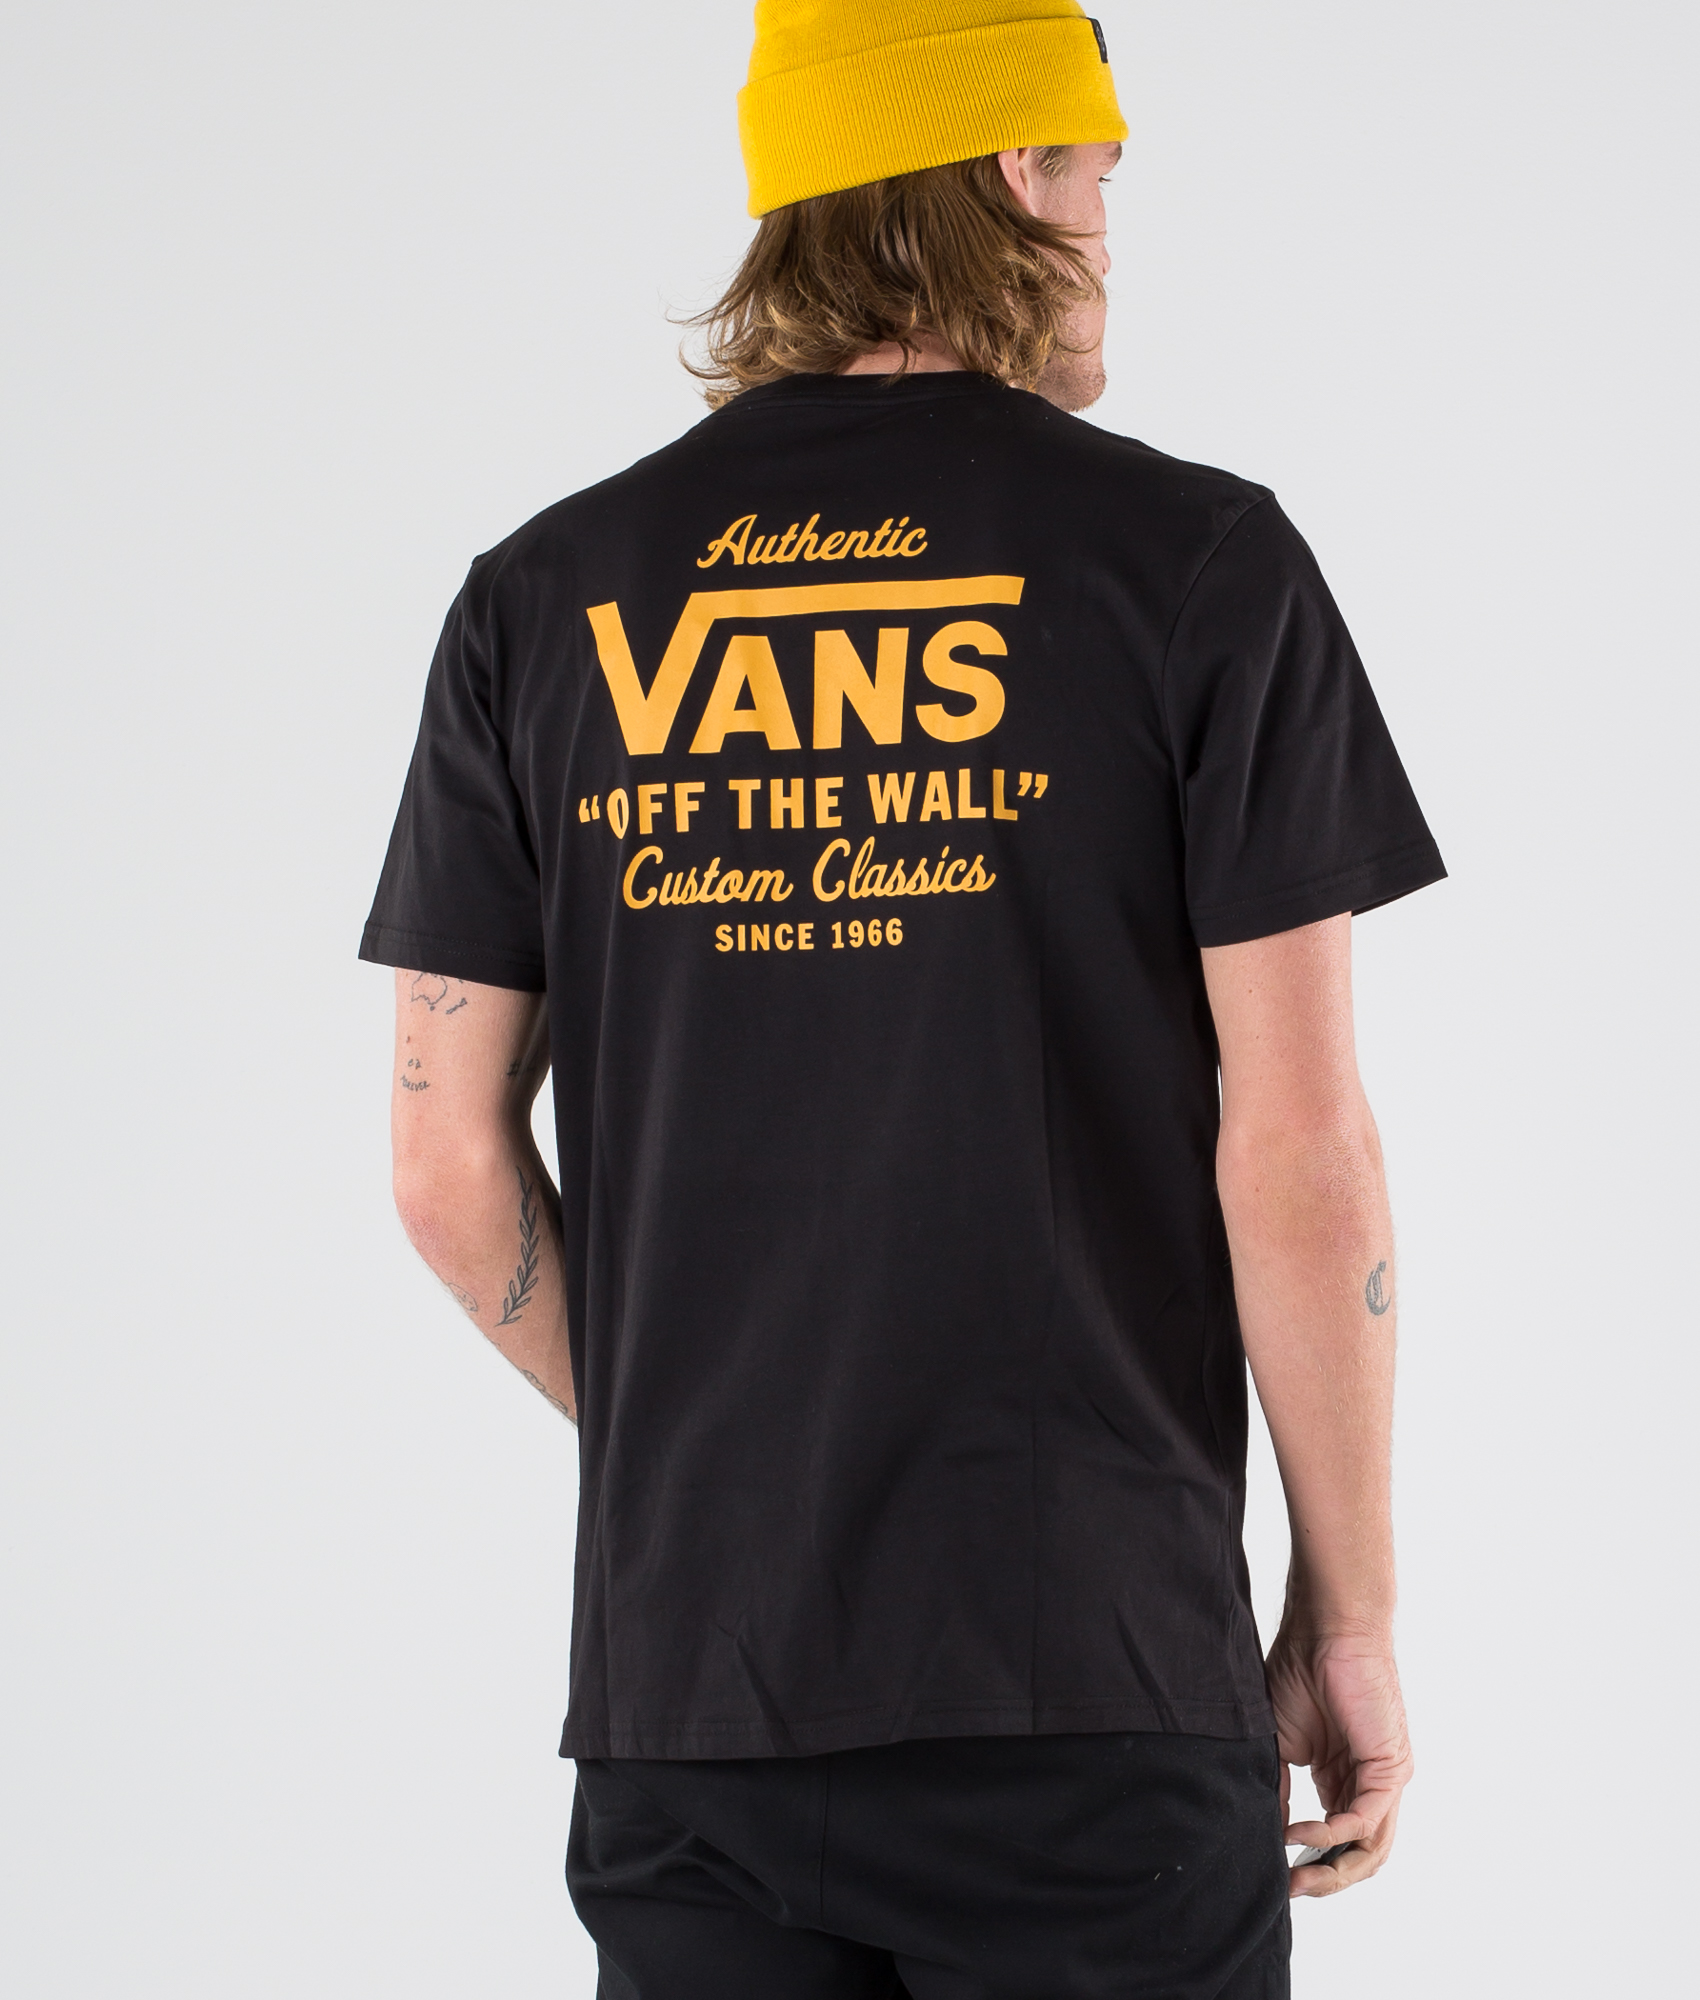 vans since 1966 t shirt